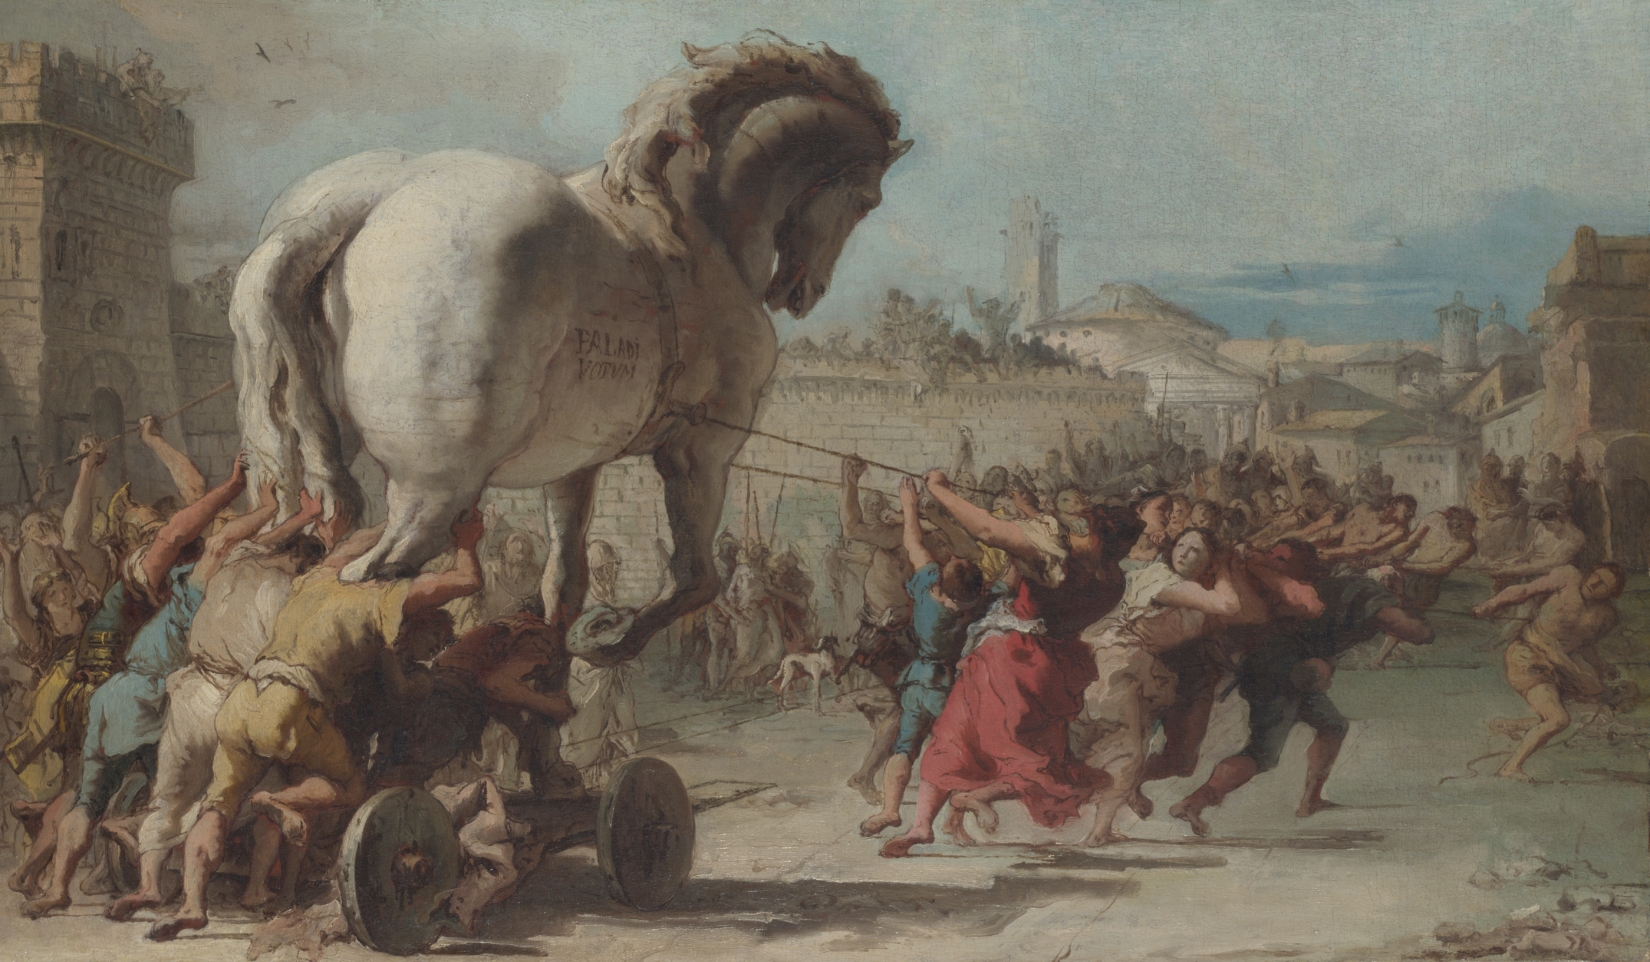 Tranh cuộc rước của ngựa Troy tái hiện cảnh tượng huyền thoại của cuộc chiến Tranh Troy với tình tiết đầy kịch tính. Với sự thể hiện chân thực và sống động, bức tranh này sẽ khiến bạn cảm thấy thích thú và muốn khám phá thêm về nét đẹp của tranh vẽ.